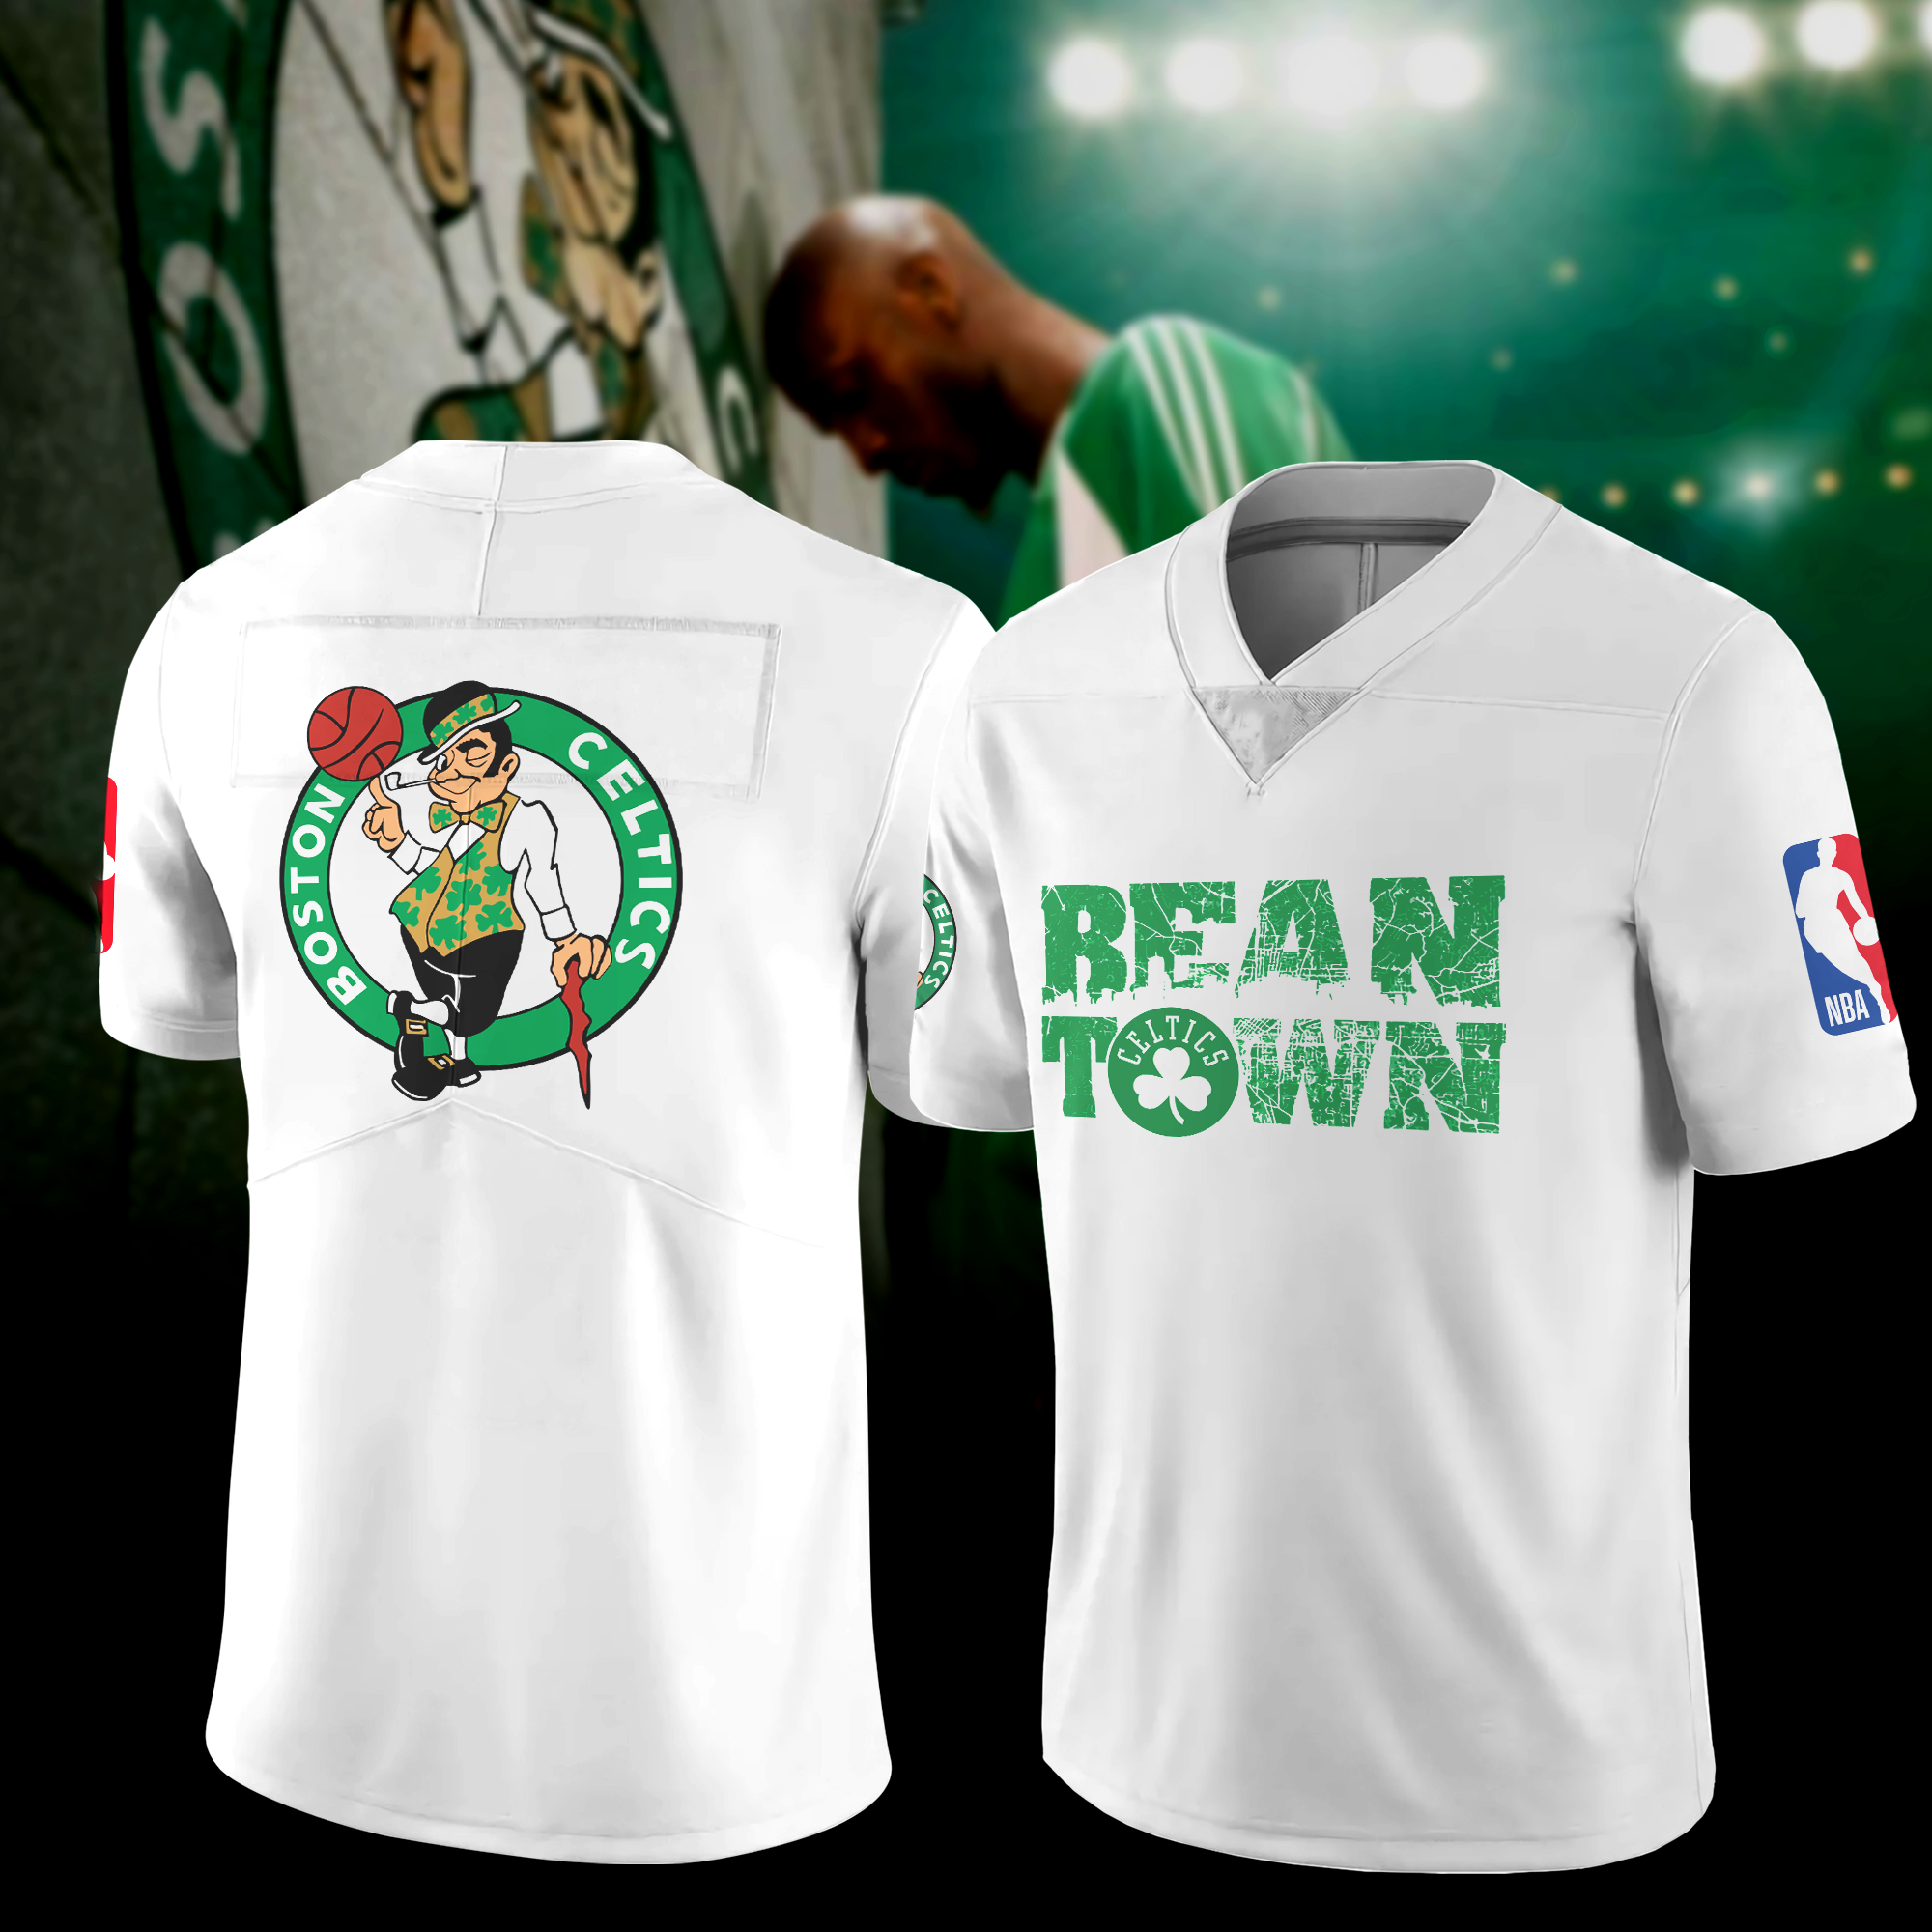 Boston Celtics Personalized Baseball Jersey Shirt - T-shirts Low Price